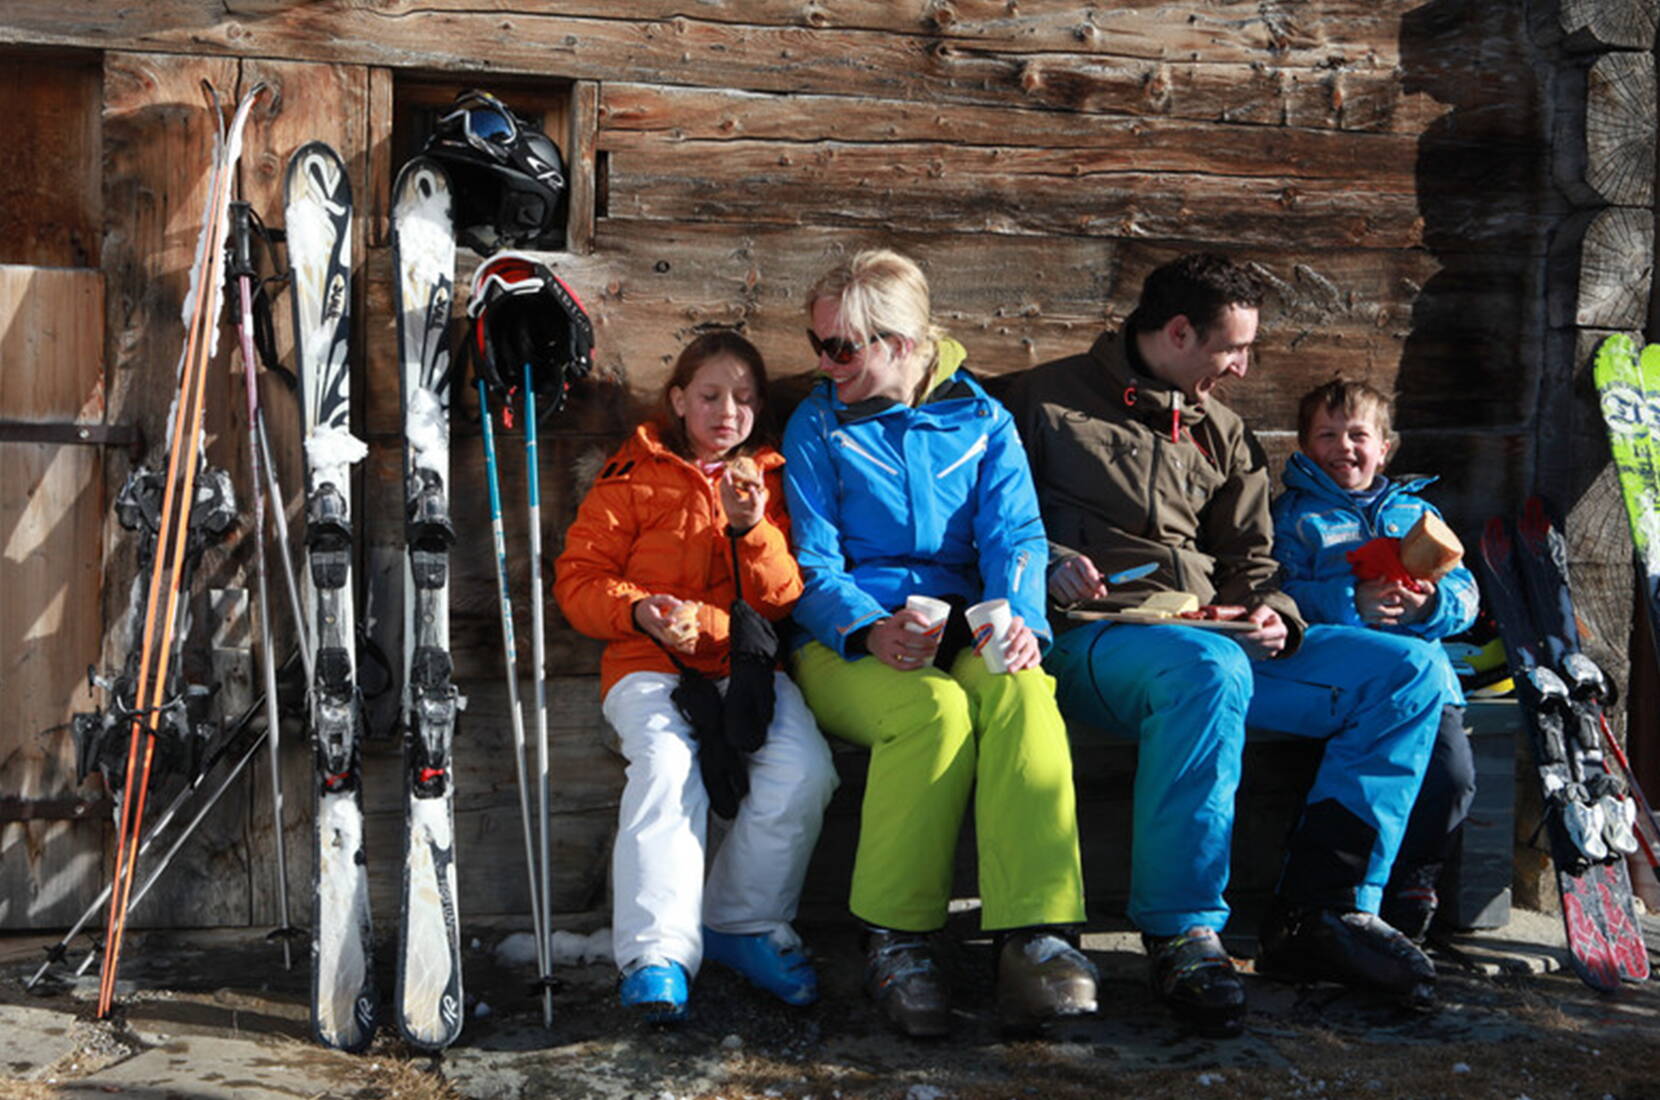 Excursion en famille à Savognin. Avec beaucoup de neige naturelle et des pistes rouges et bleues extra larges, le domaine skiable baigné de soleil offre un plaisir de glisse particulier - ce n'est pas pour rien que les pistes de Savognin comptent parmi les plus belles de tout l'espace alpin.